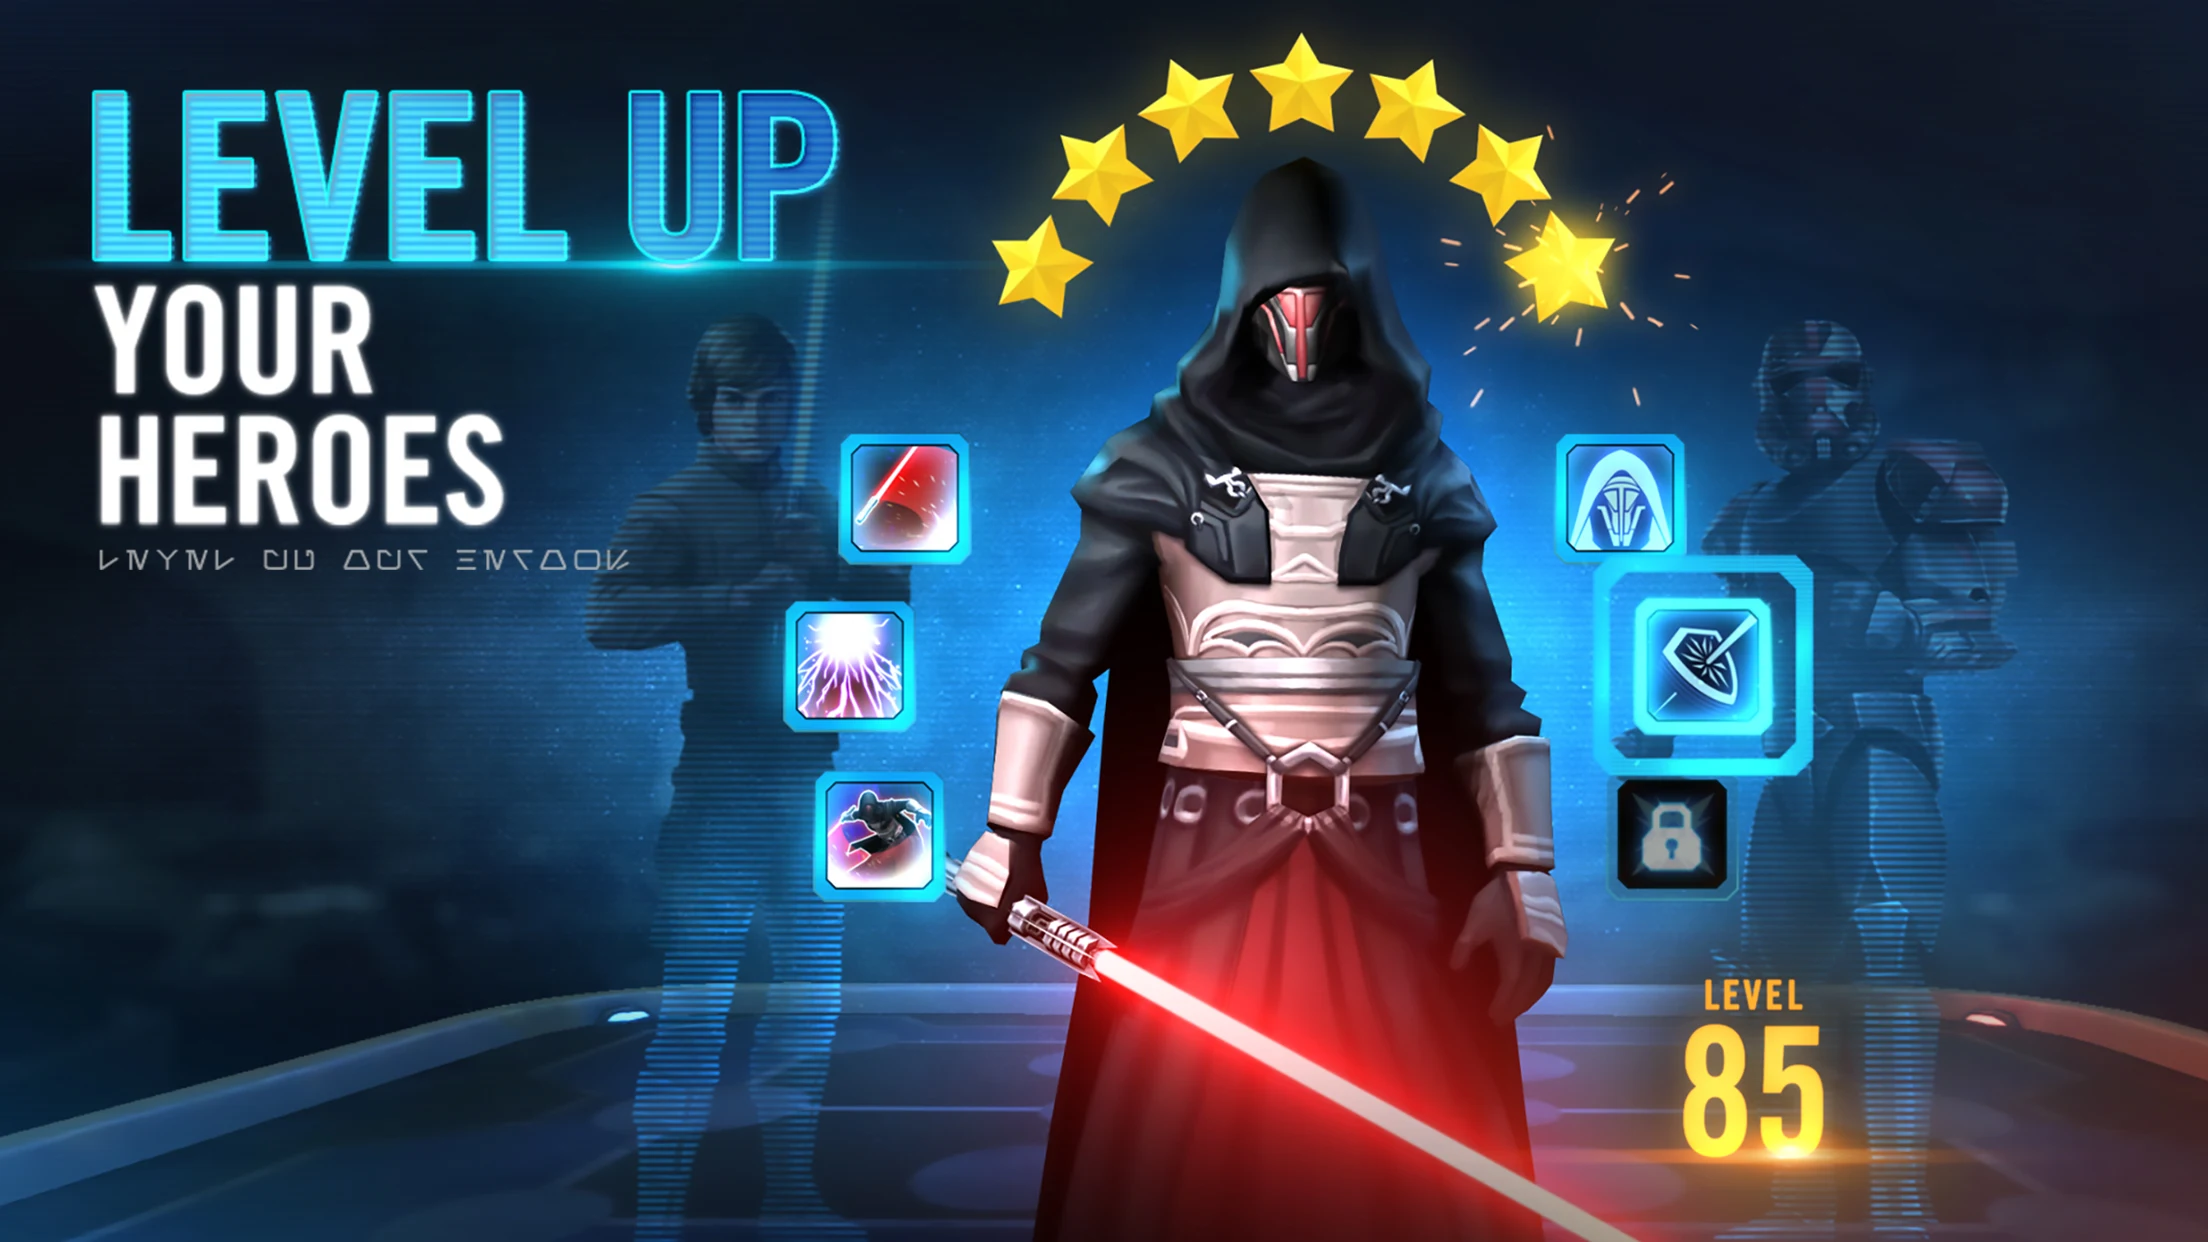 Star Wars Galaxy of Heroes Game Full Version Unlocked